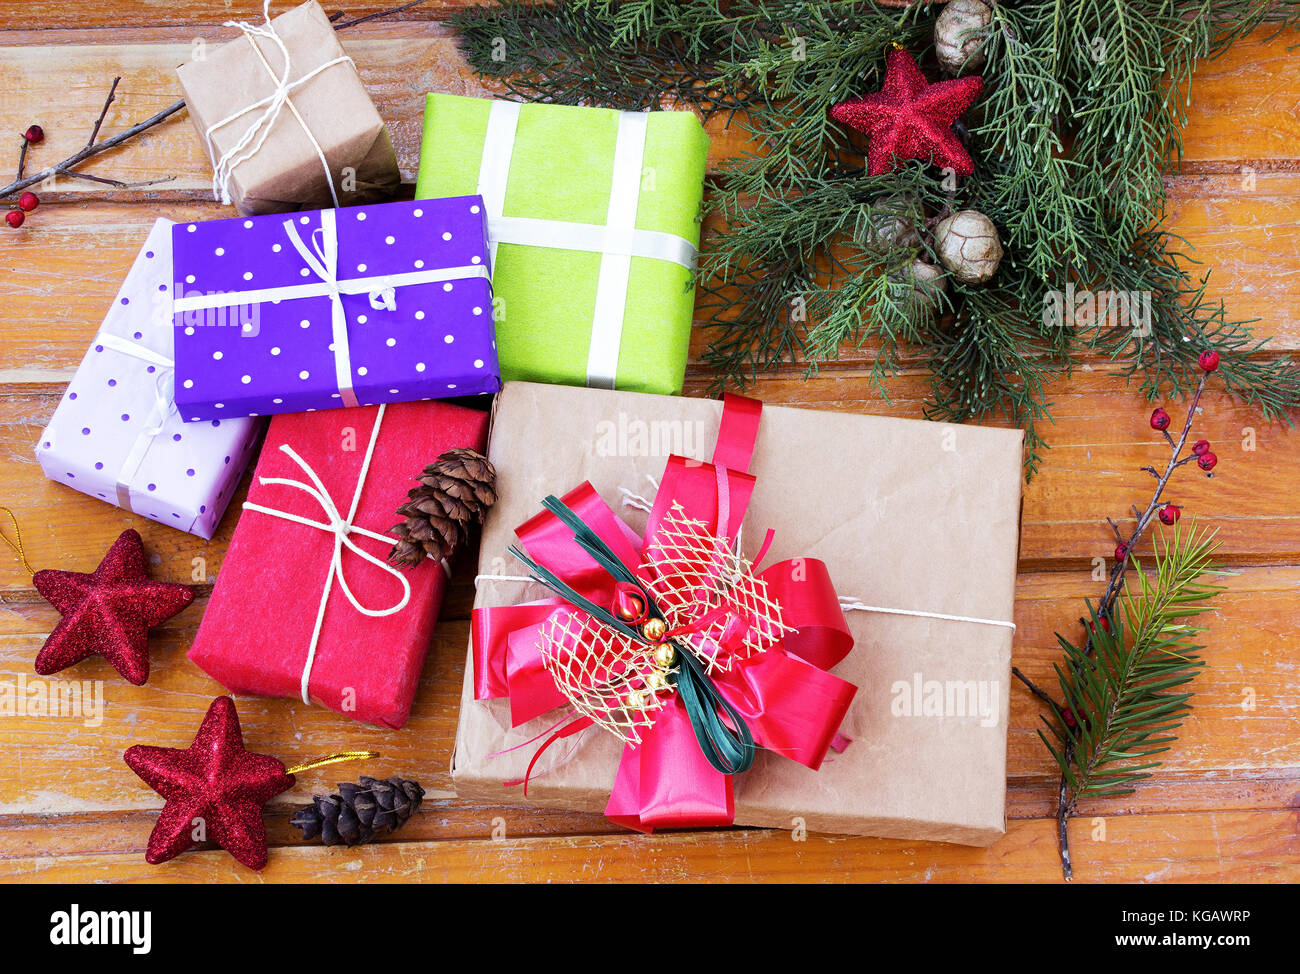 Le temps de Noël. des cadeaux de Noël et décorations de Noël Banque D'Images